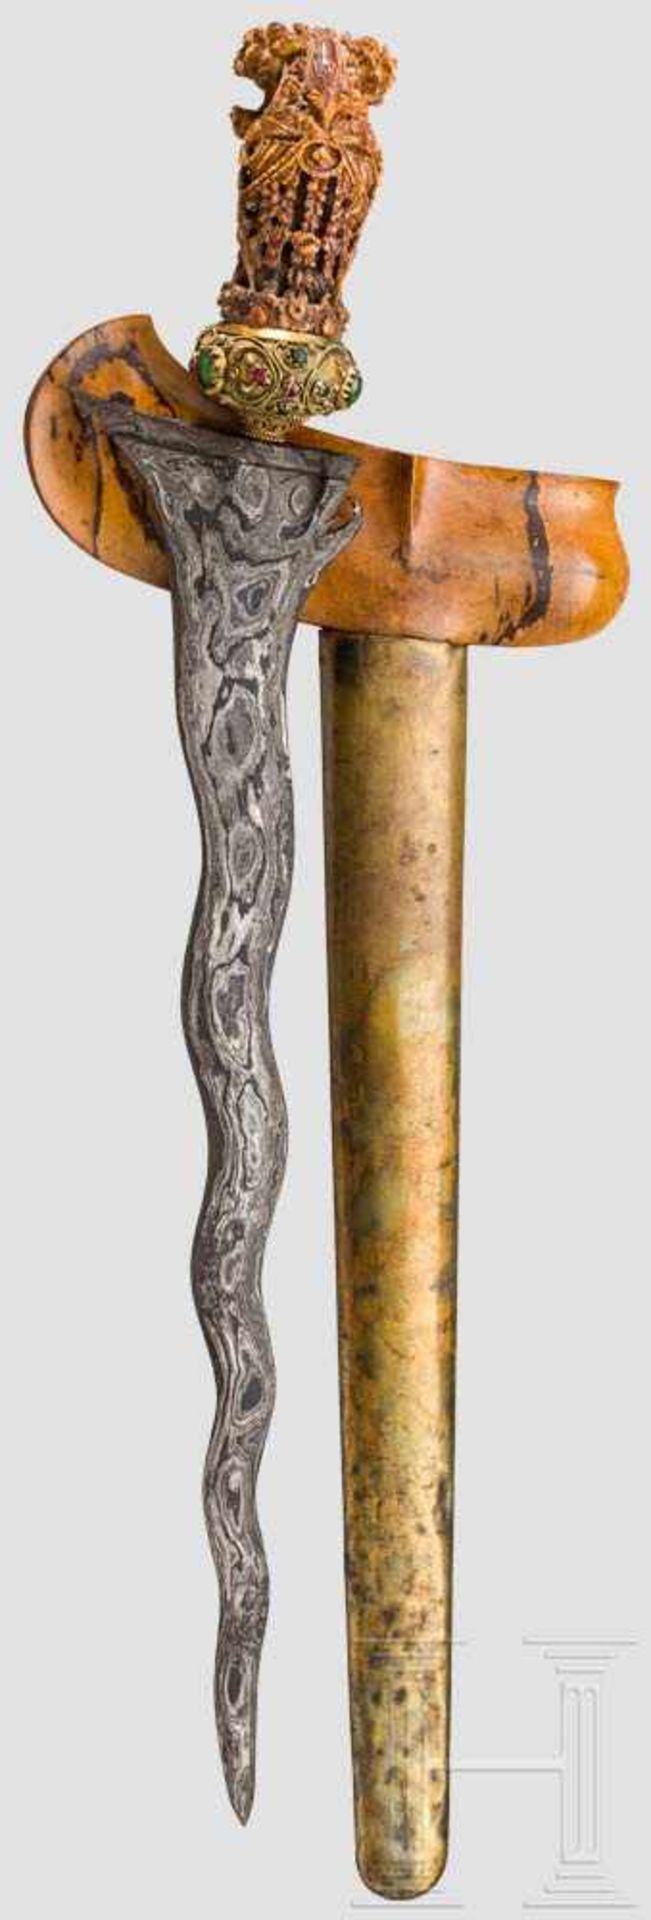 Kris, Madura, vor 1900 Kräftige Klinge aus Damaststahl, mit neun Windungen und ausgeprägtem Pamor. - Bild 2 aus 2